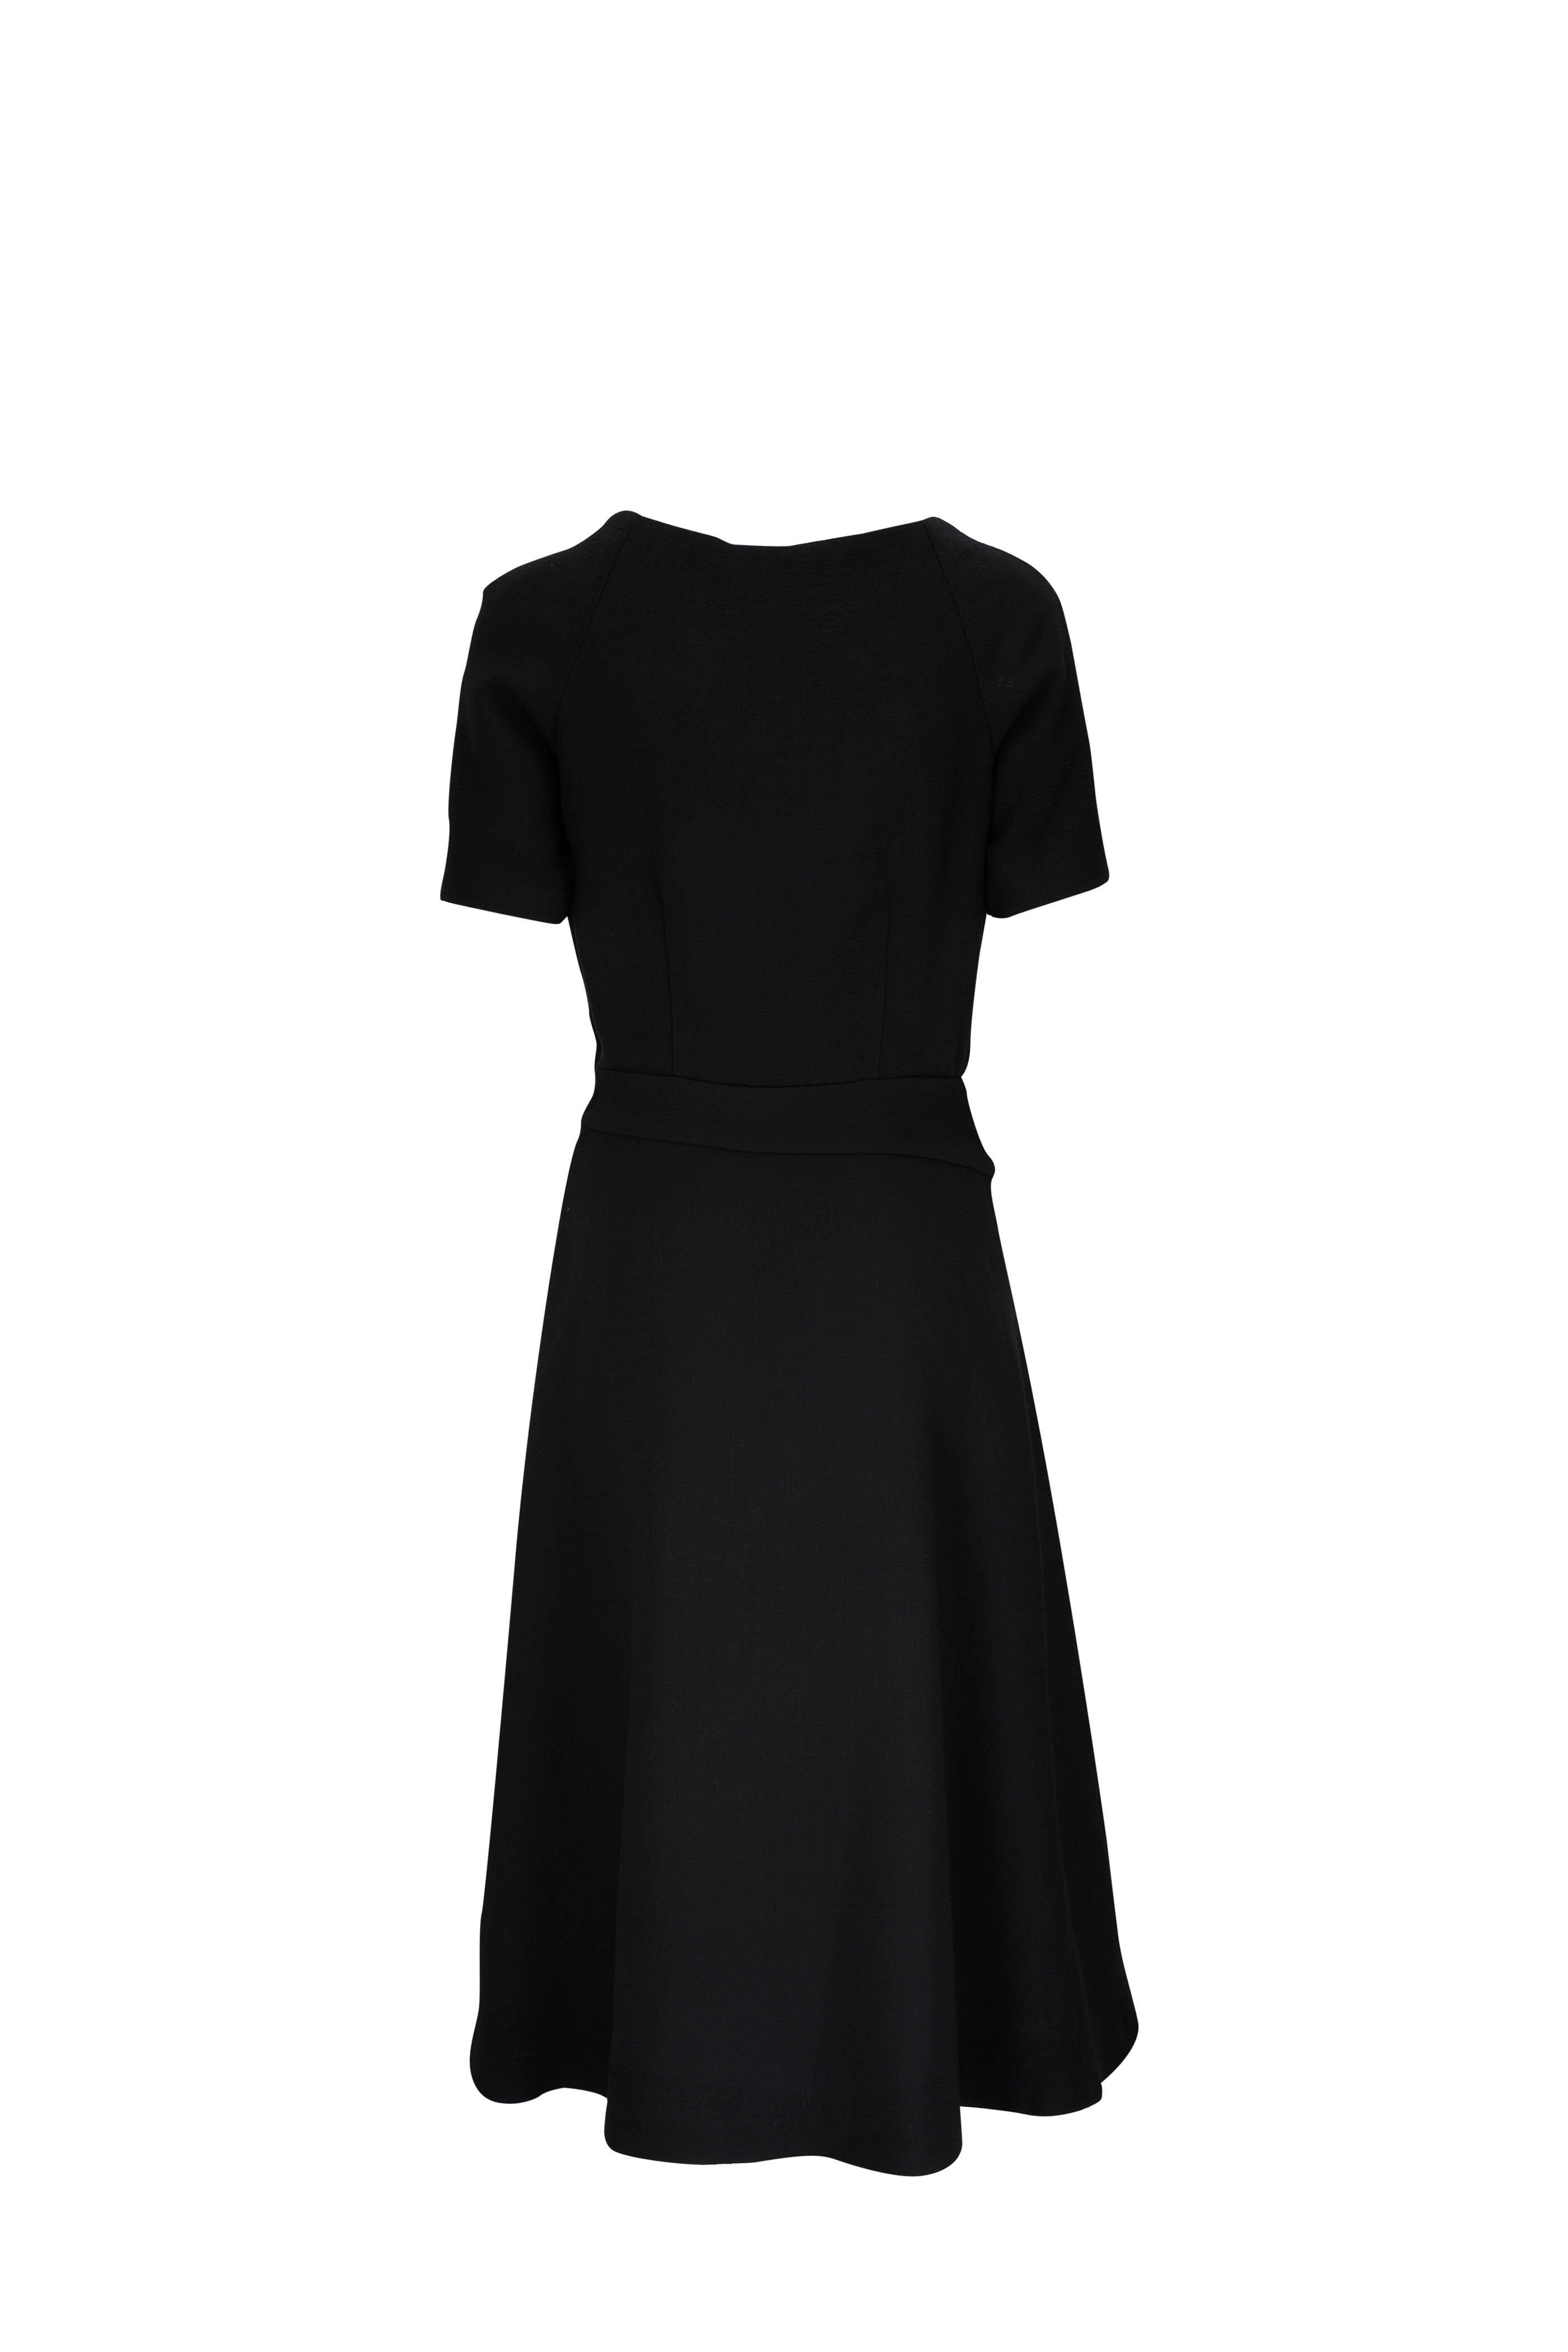 Etro - Black Embroidered Neckline Dress | Mitchell Stores